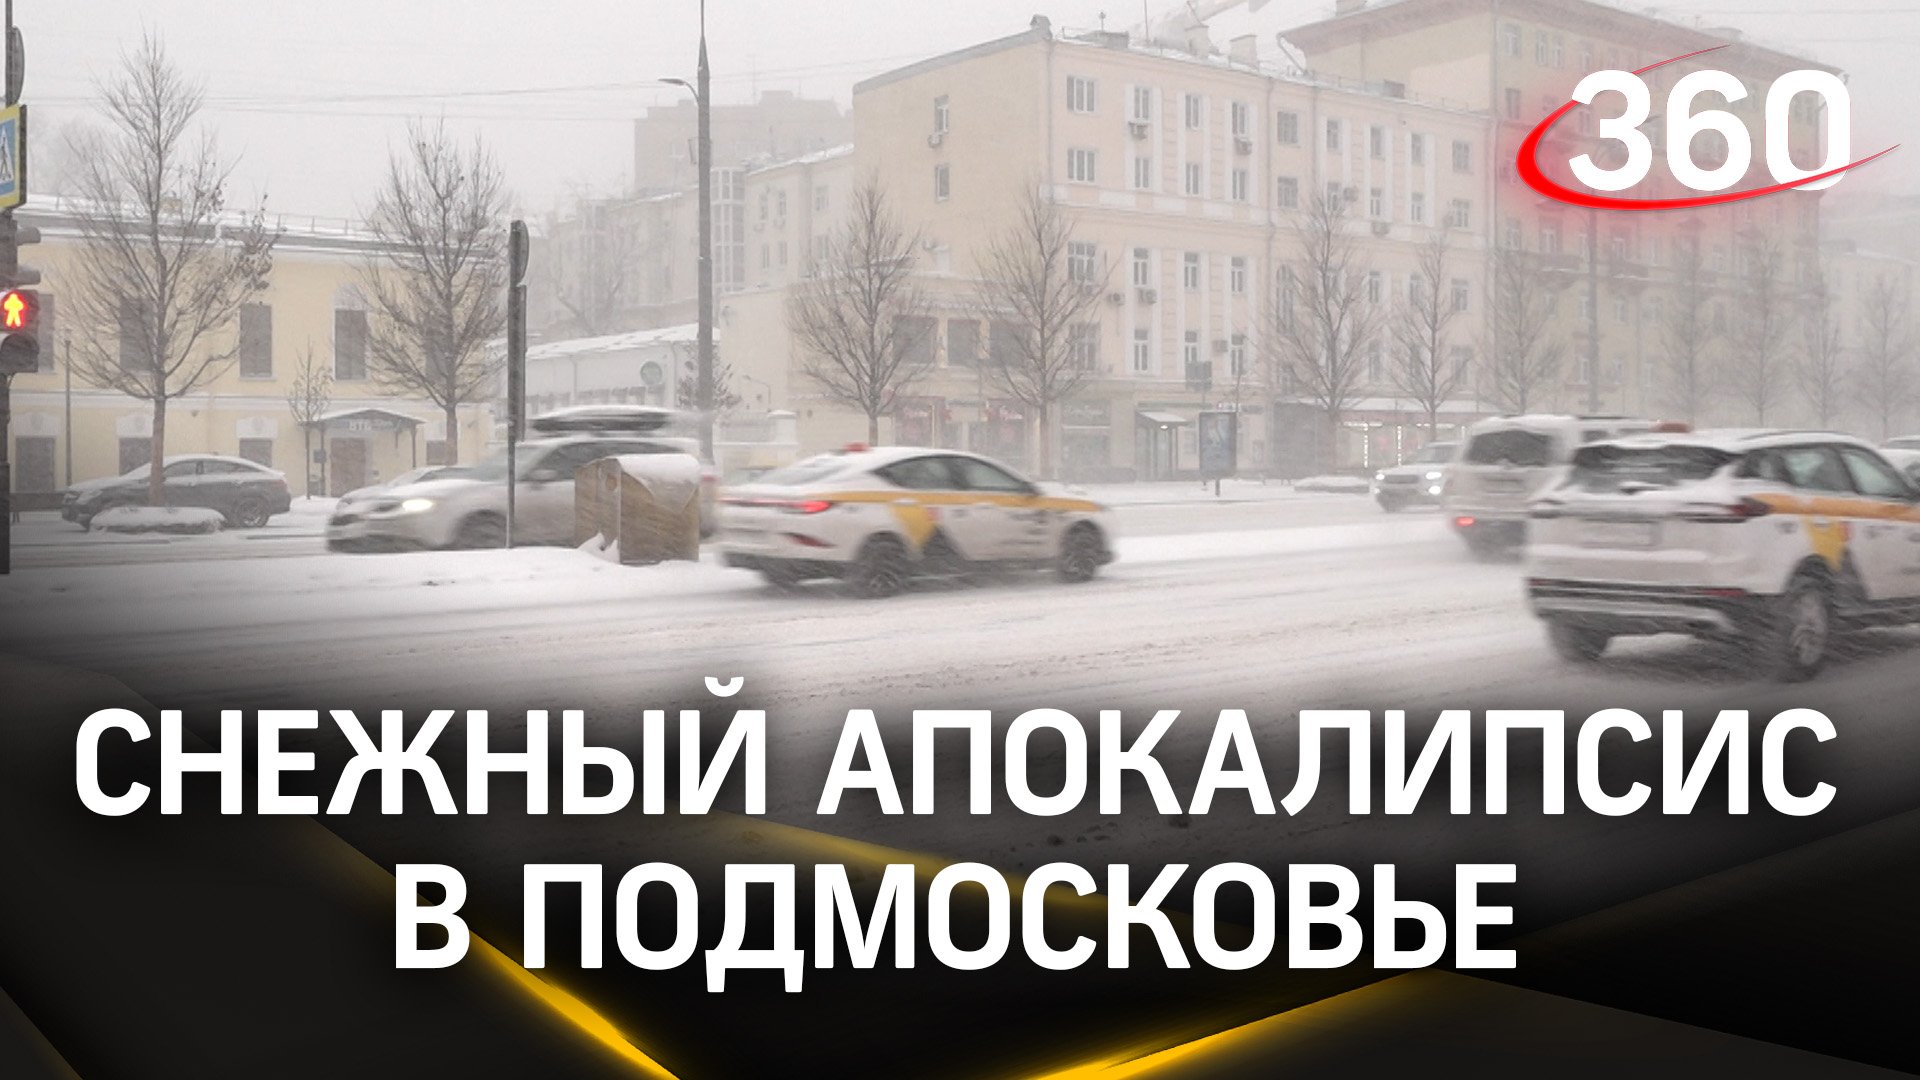 Большие сугробы, мощный снегопад: новая метель накрыла Московскую область